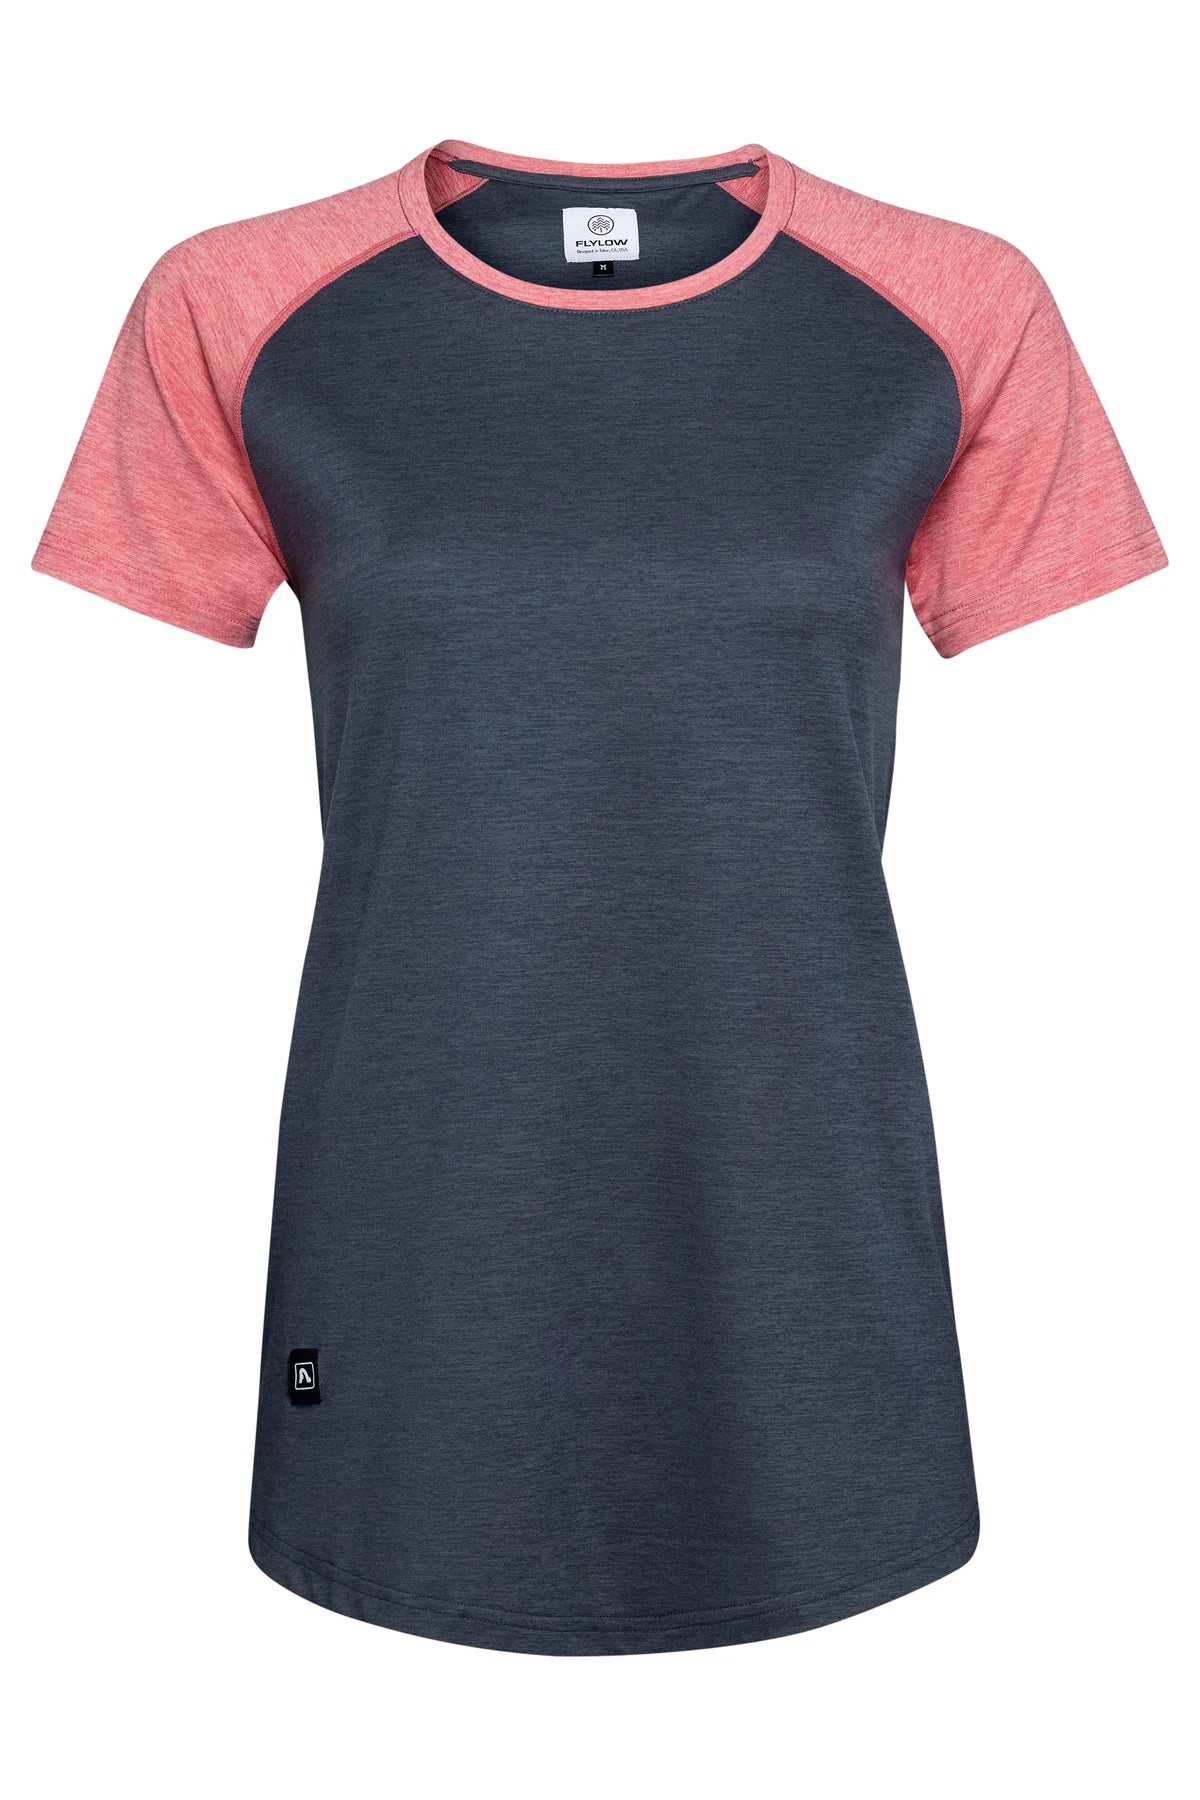 Flylow Jessi Shirt - Women's bike apparel baseball t shirt style Night blue - Alpenrose pink